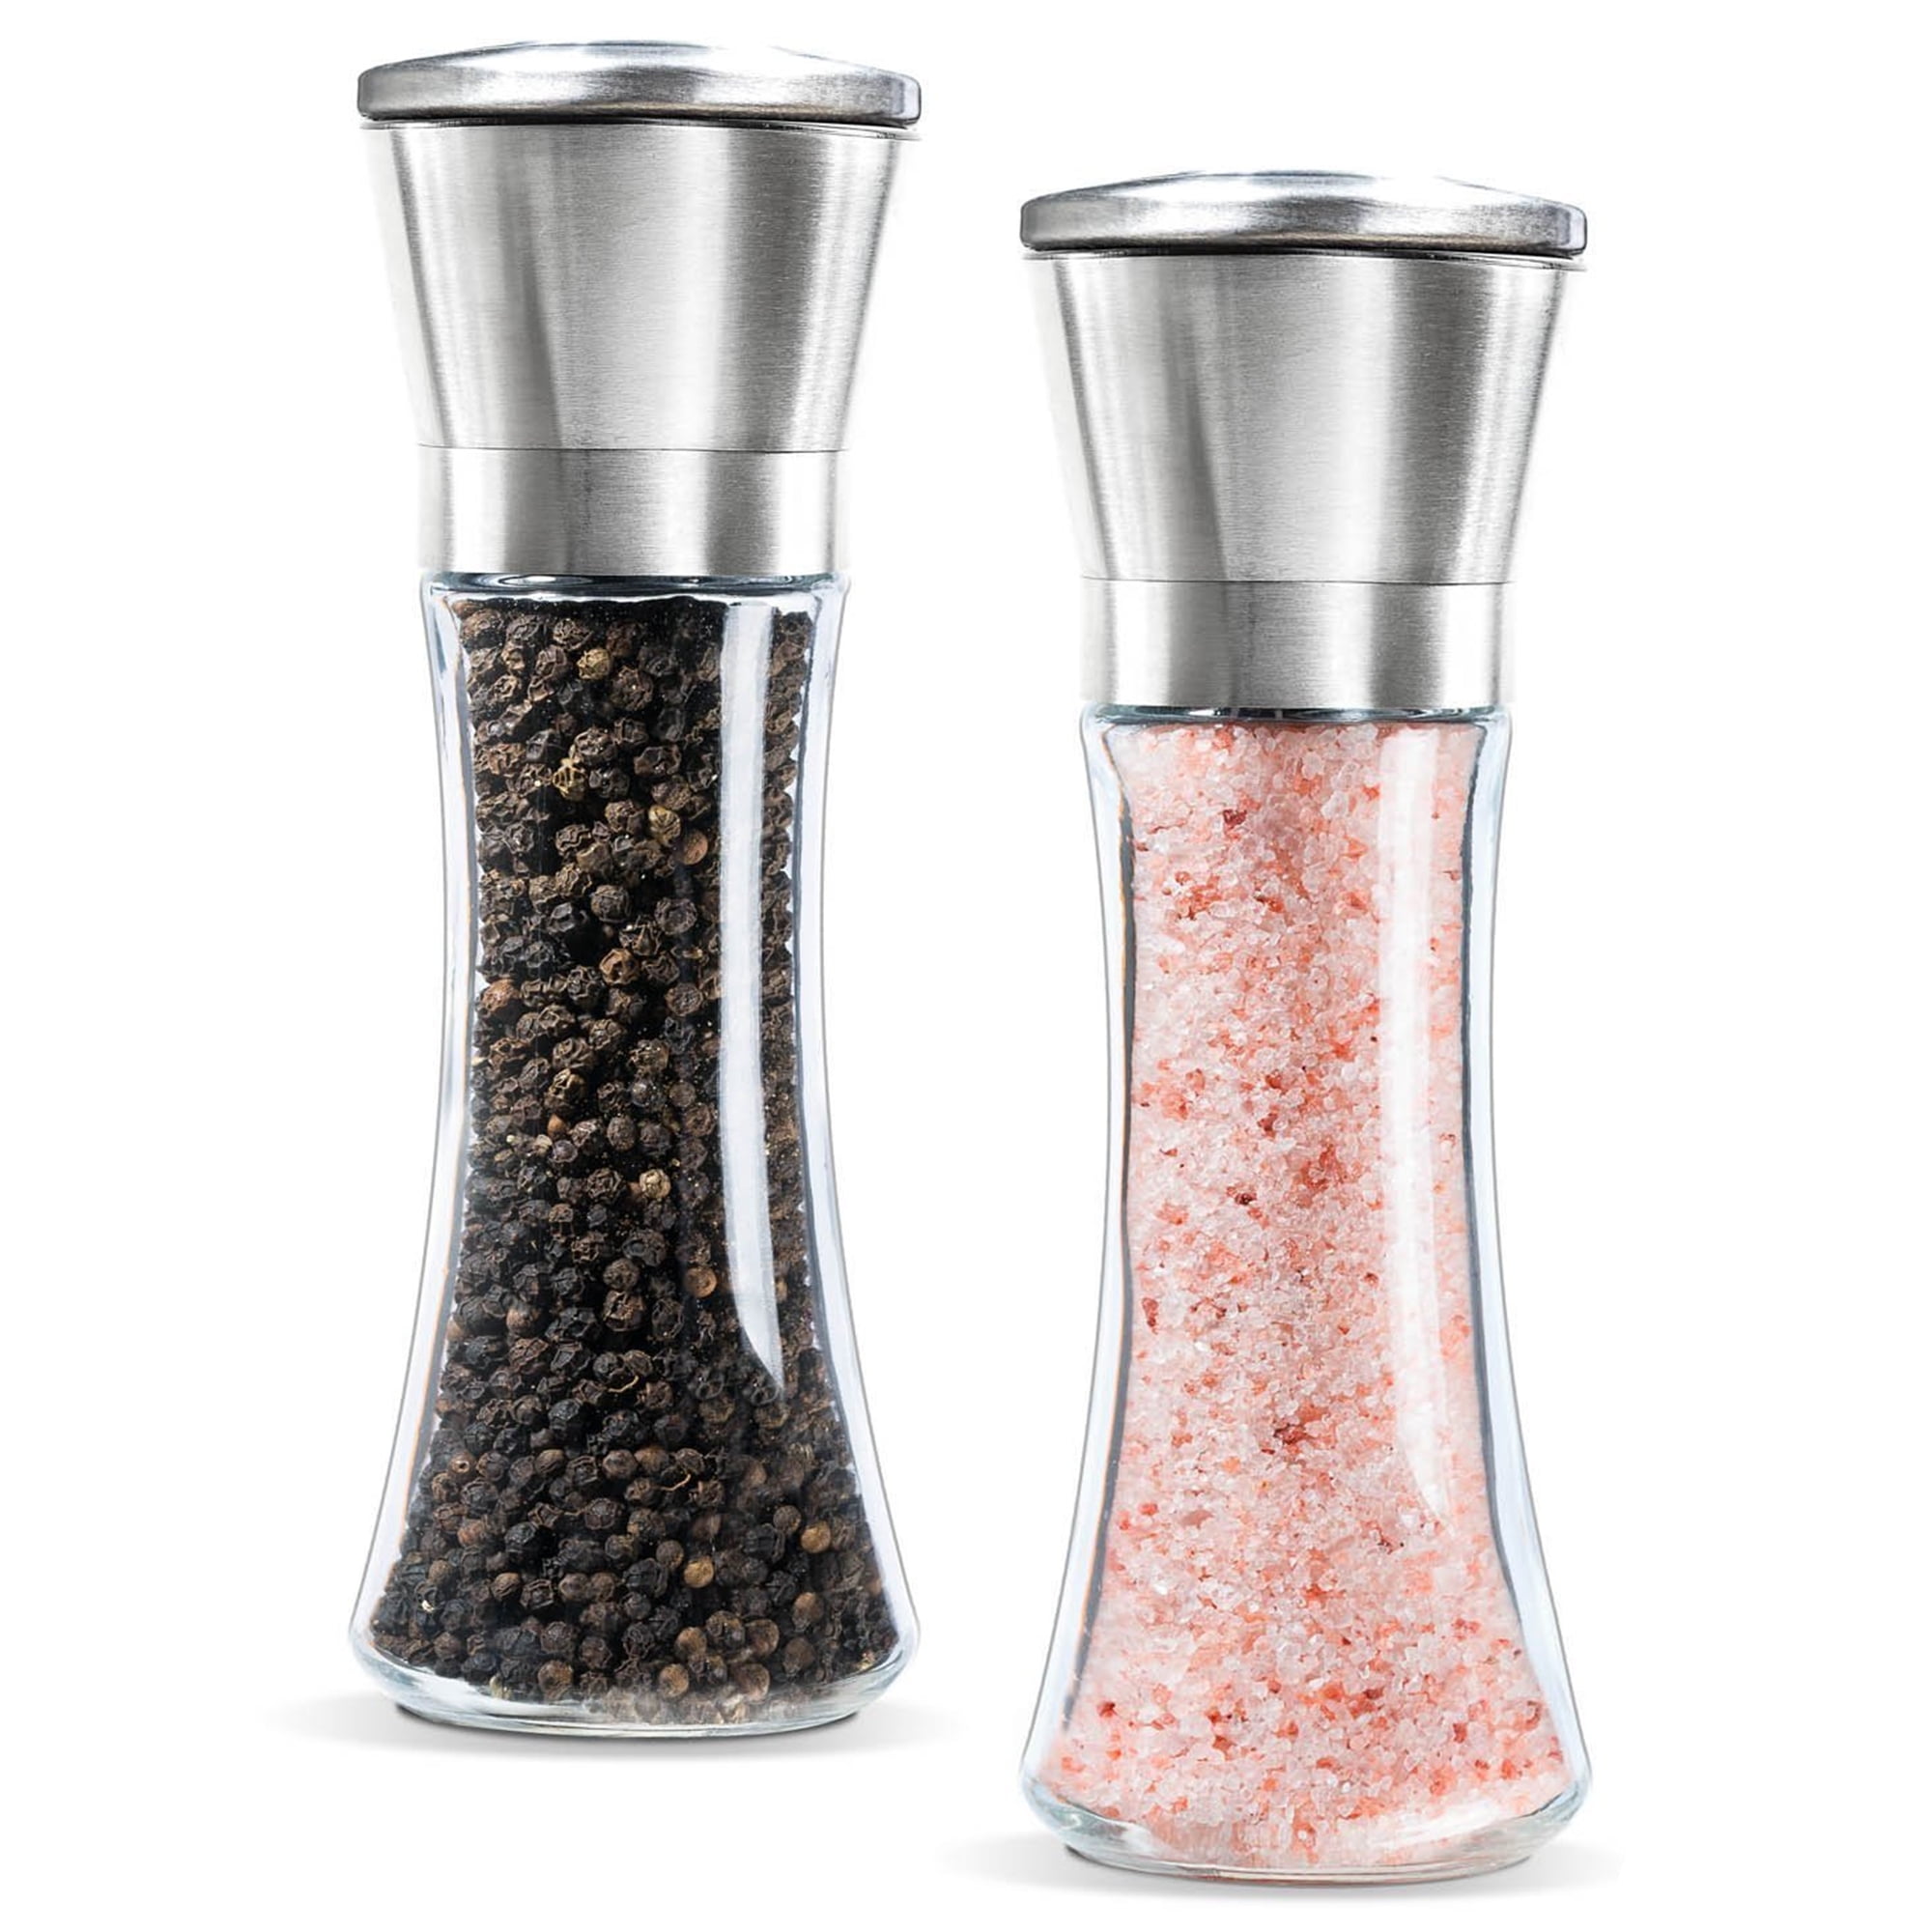  only fire Salt and Pepper Grinder Set - Adjustable Ceramic Sea  Salt Grinder & Pepper Grinder, Set of 2: Home & Kitchen